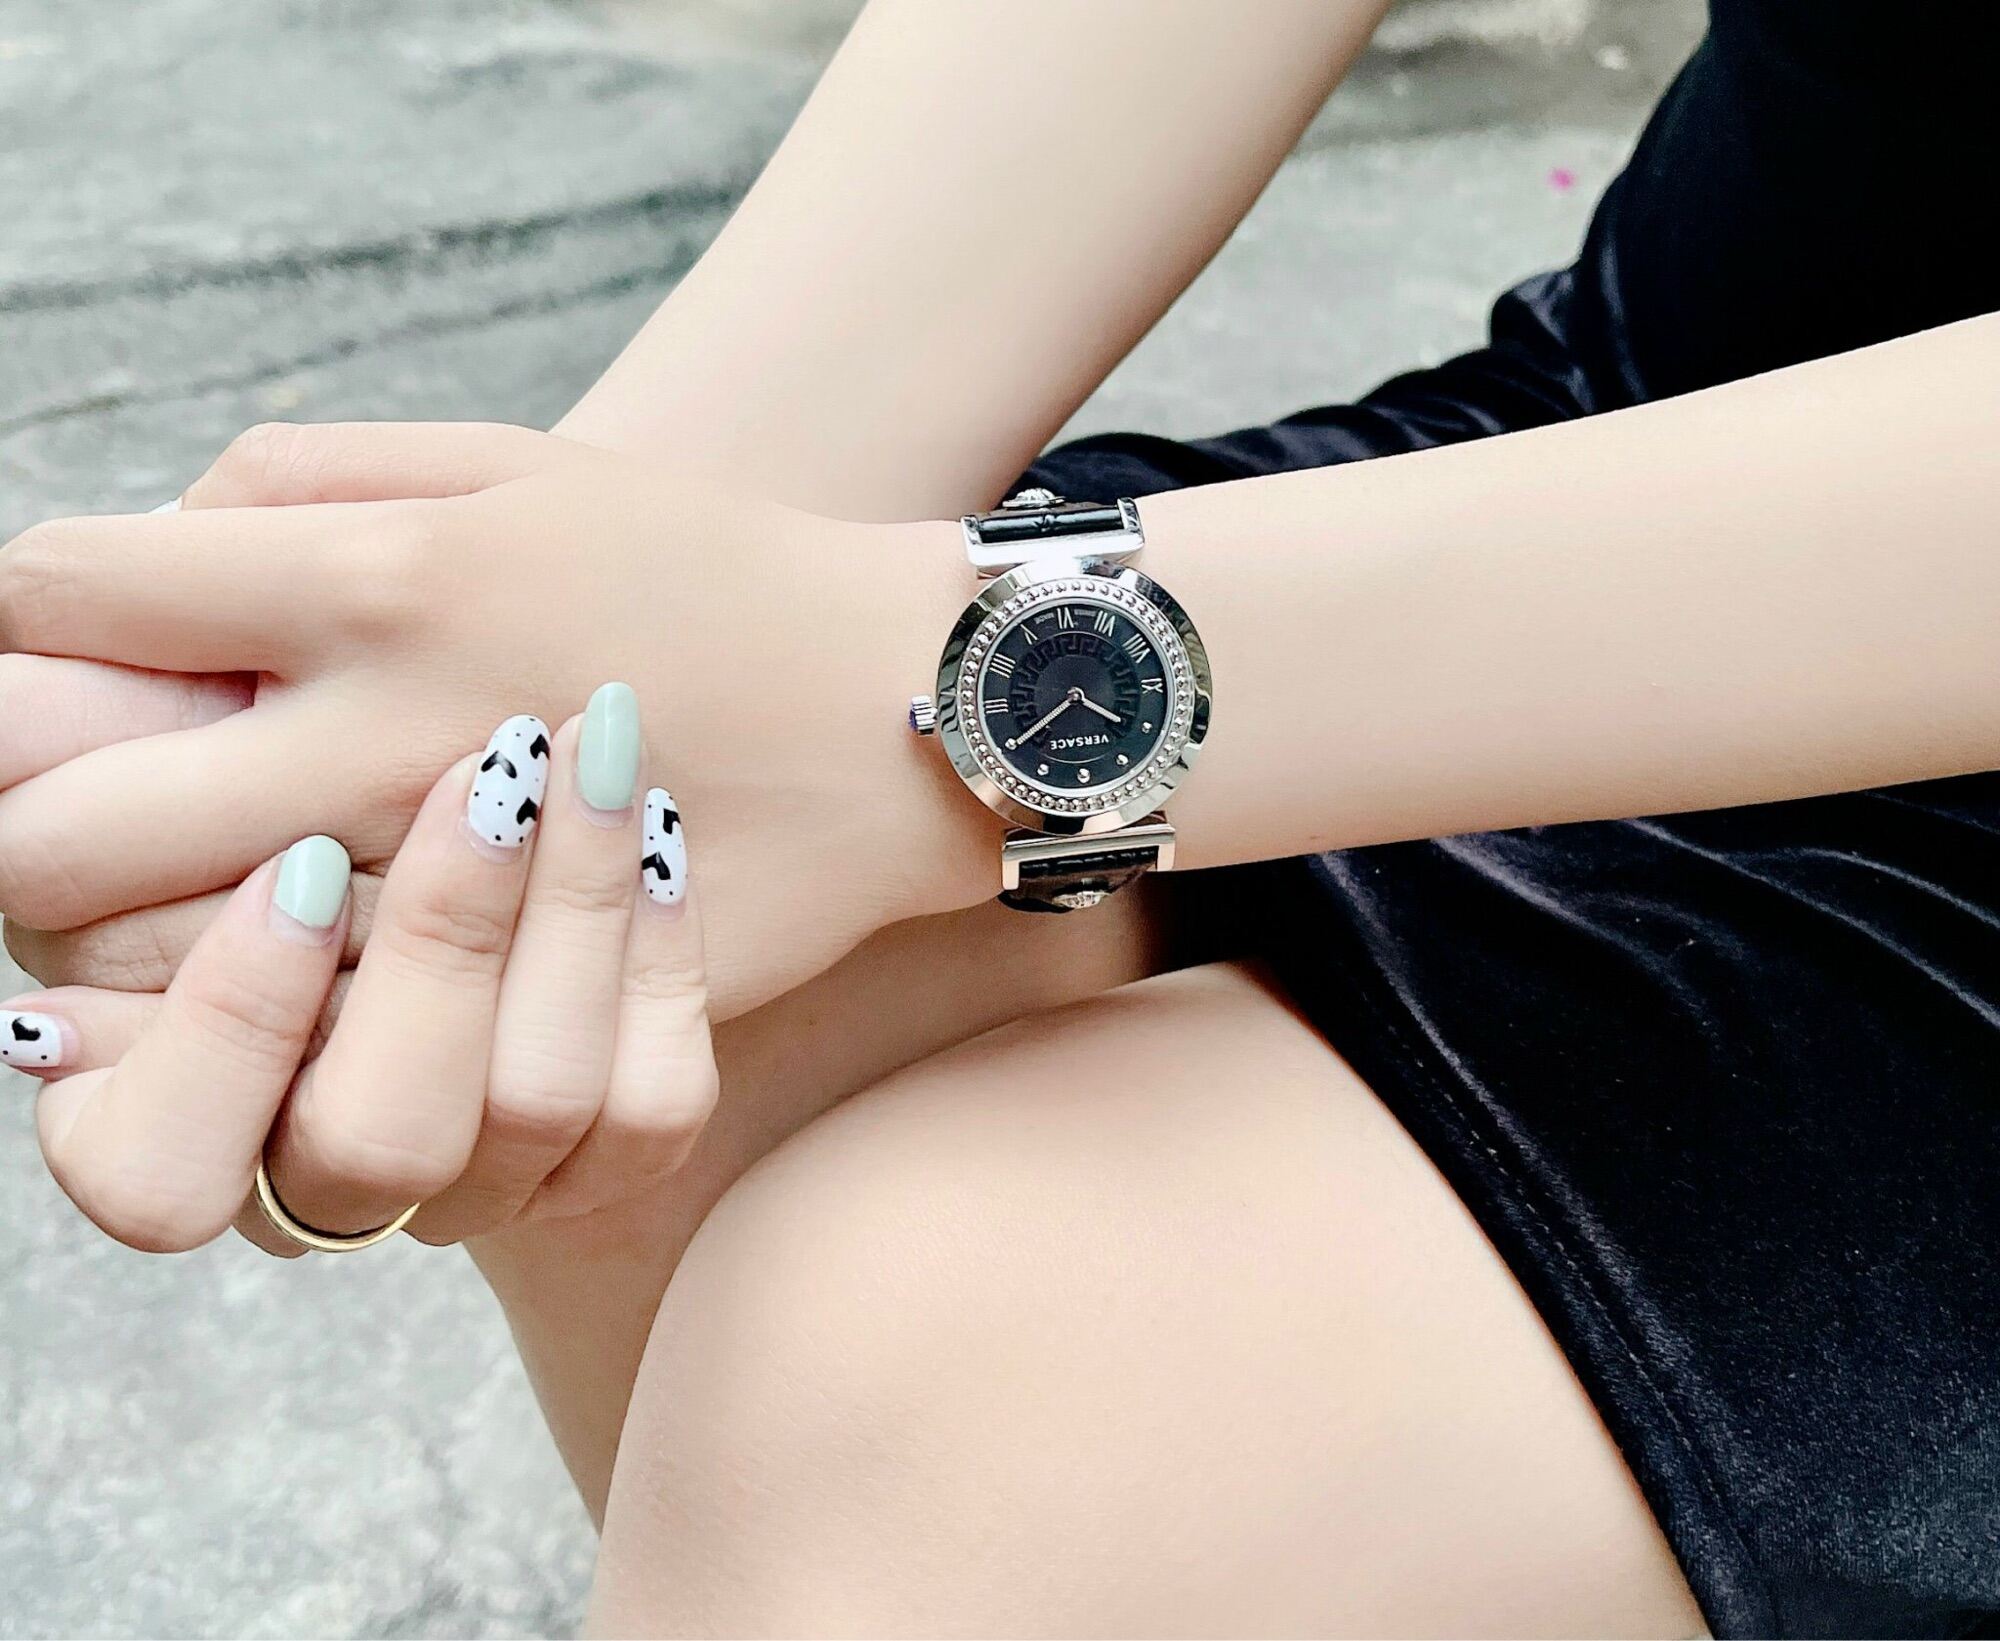 Đồng hồ nữ Versace P5Q99D009 vanity black thời trang, hàng xách tay